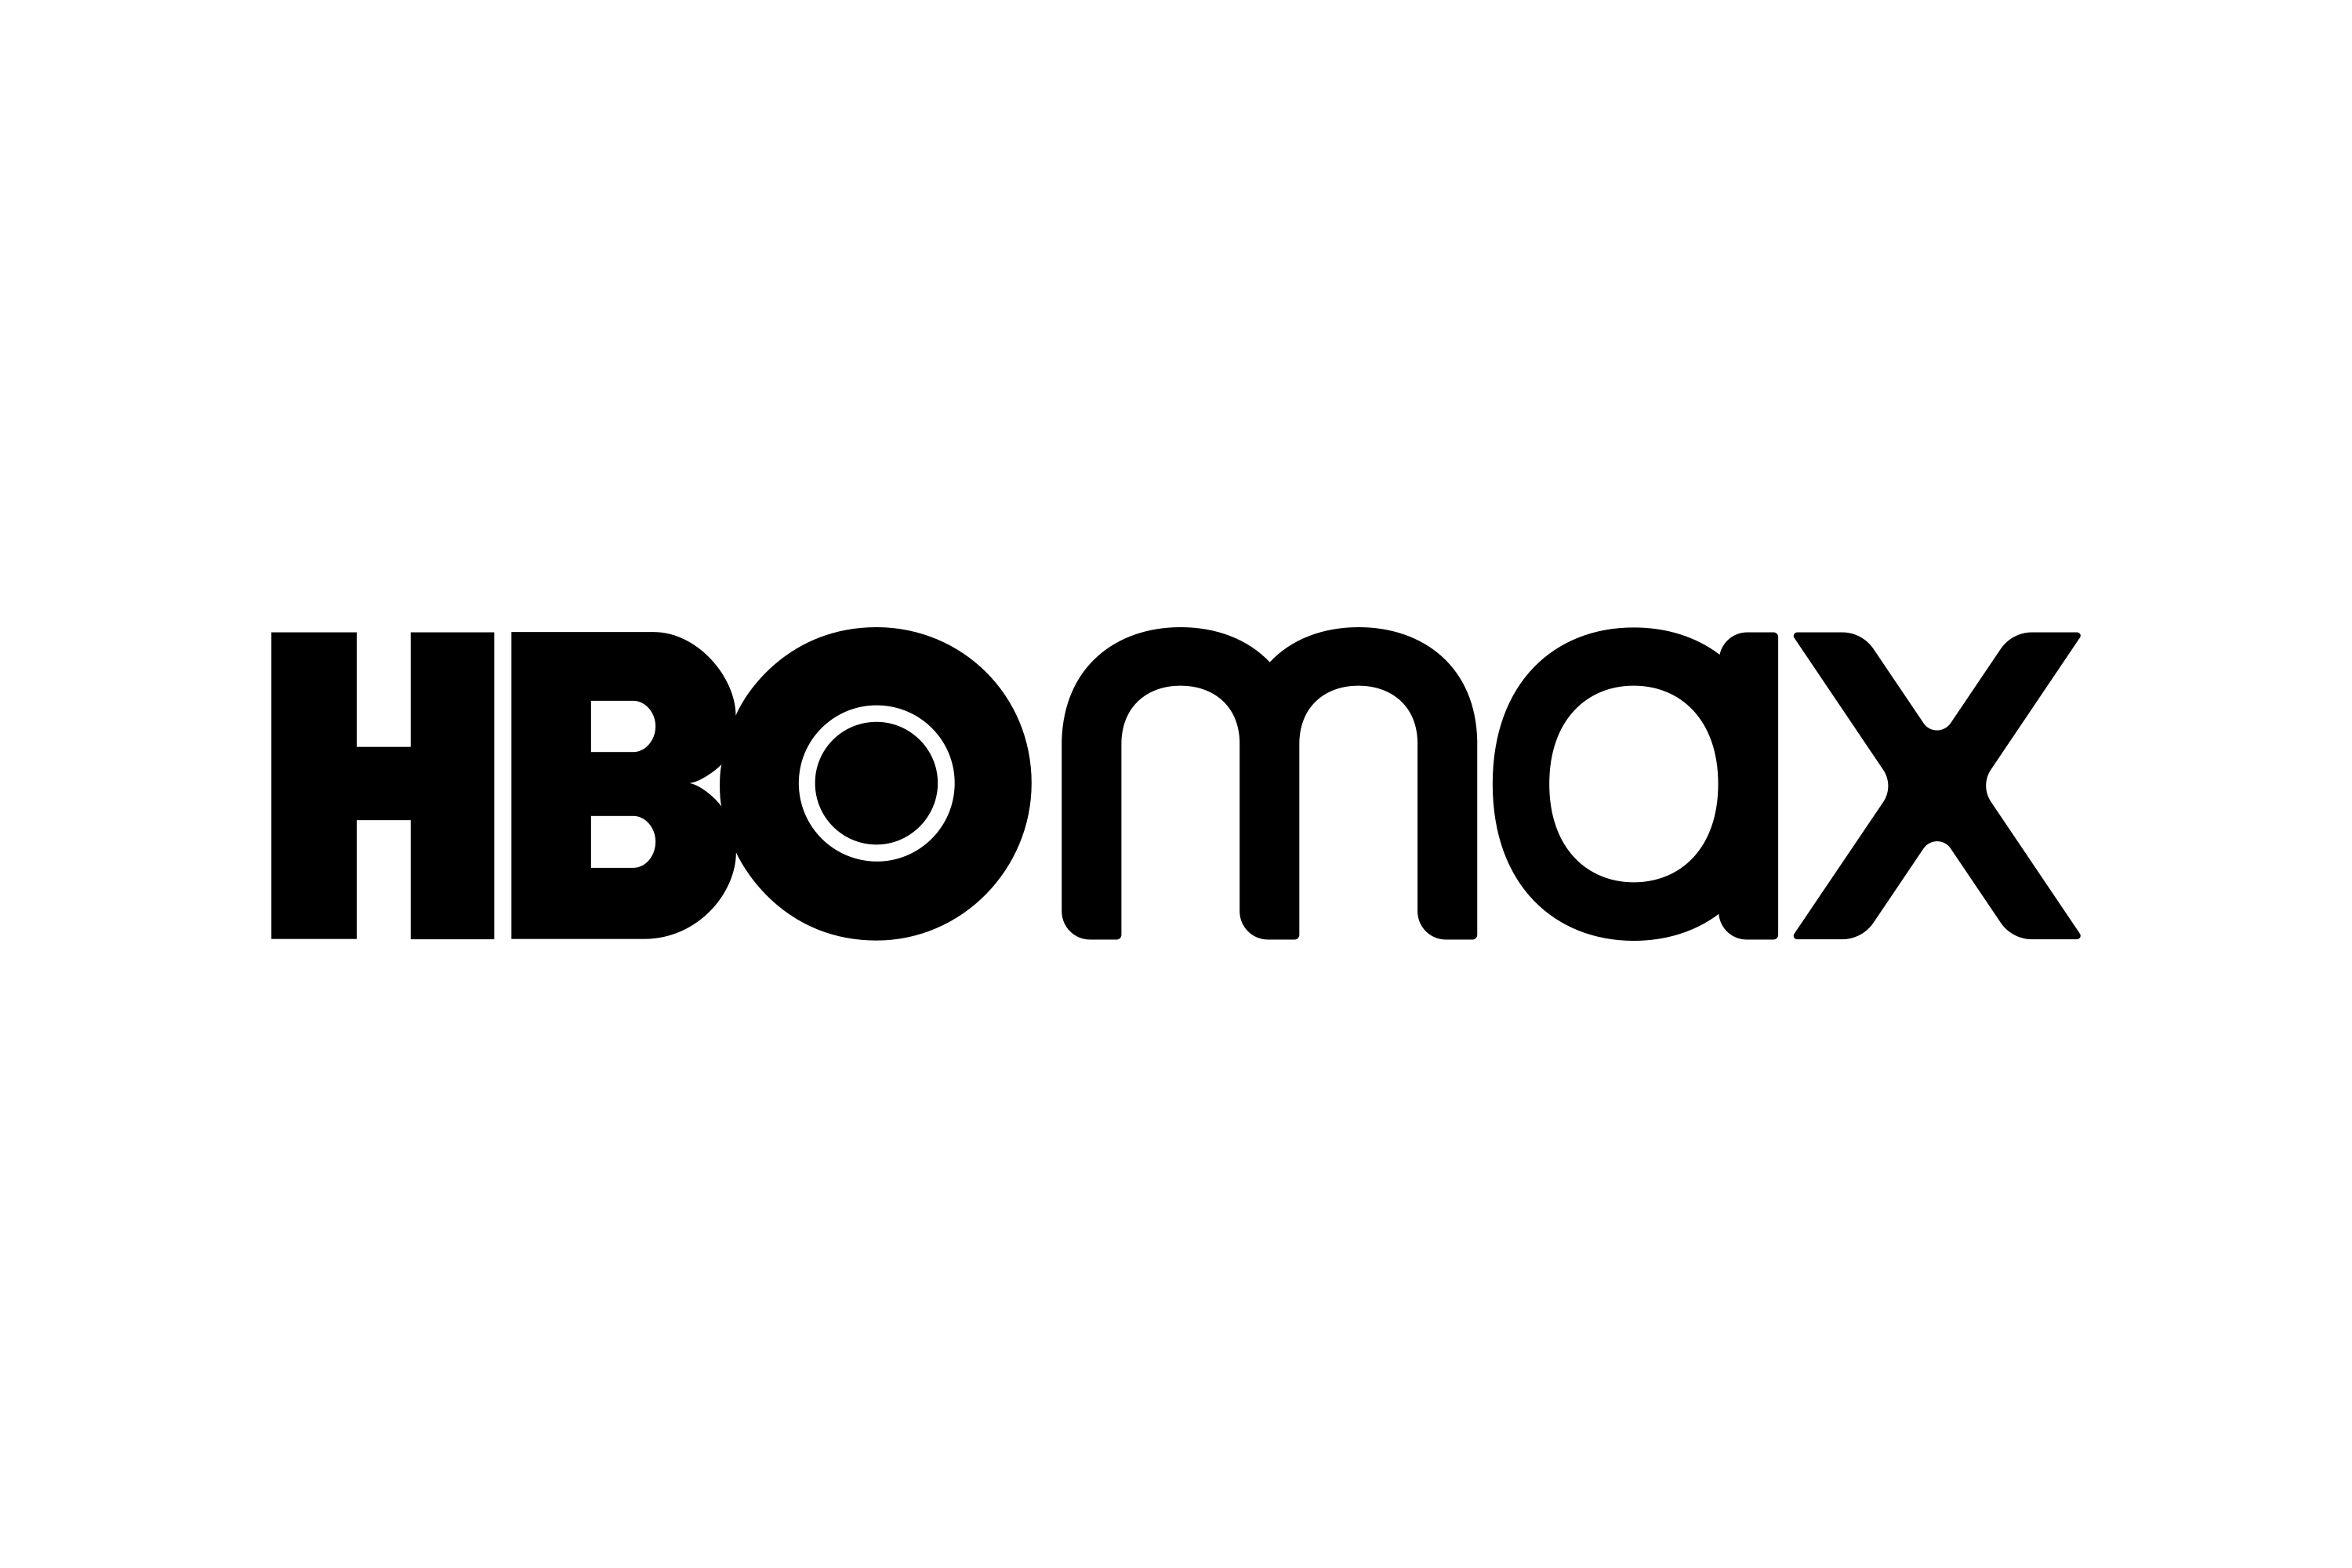 HBO Max Logo